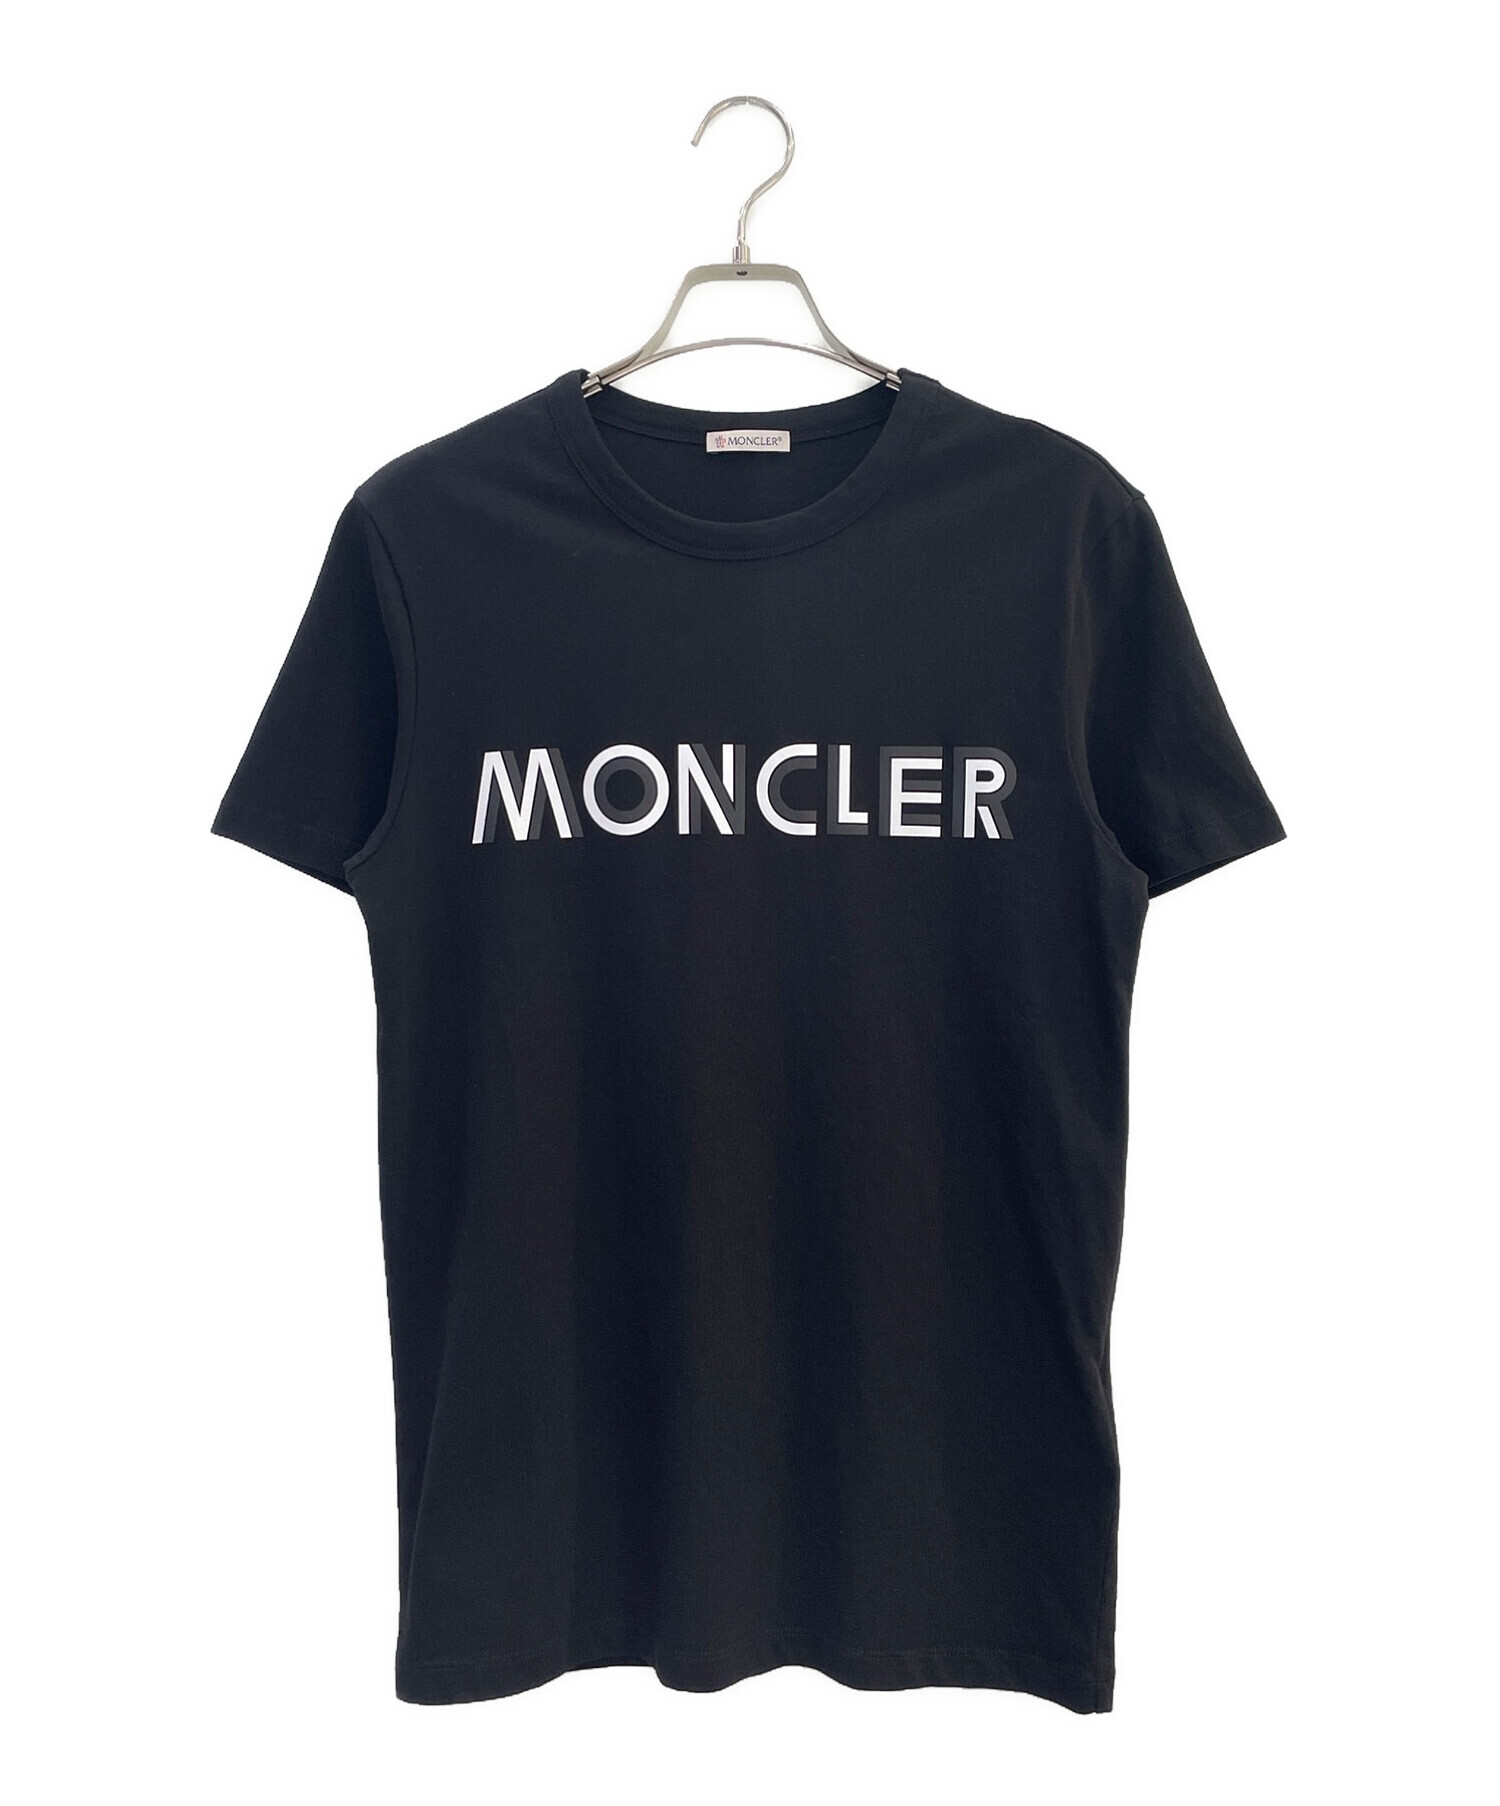 MONCLER (モンクレール) ロゴプリントTシャツ ブラック×ホワイト サイズ:XS